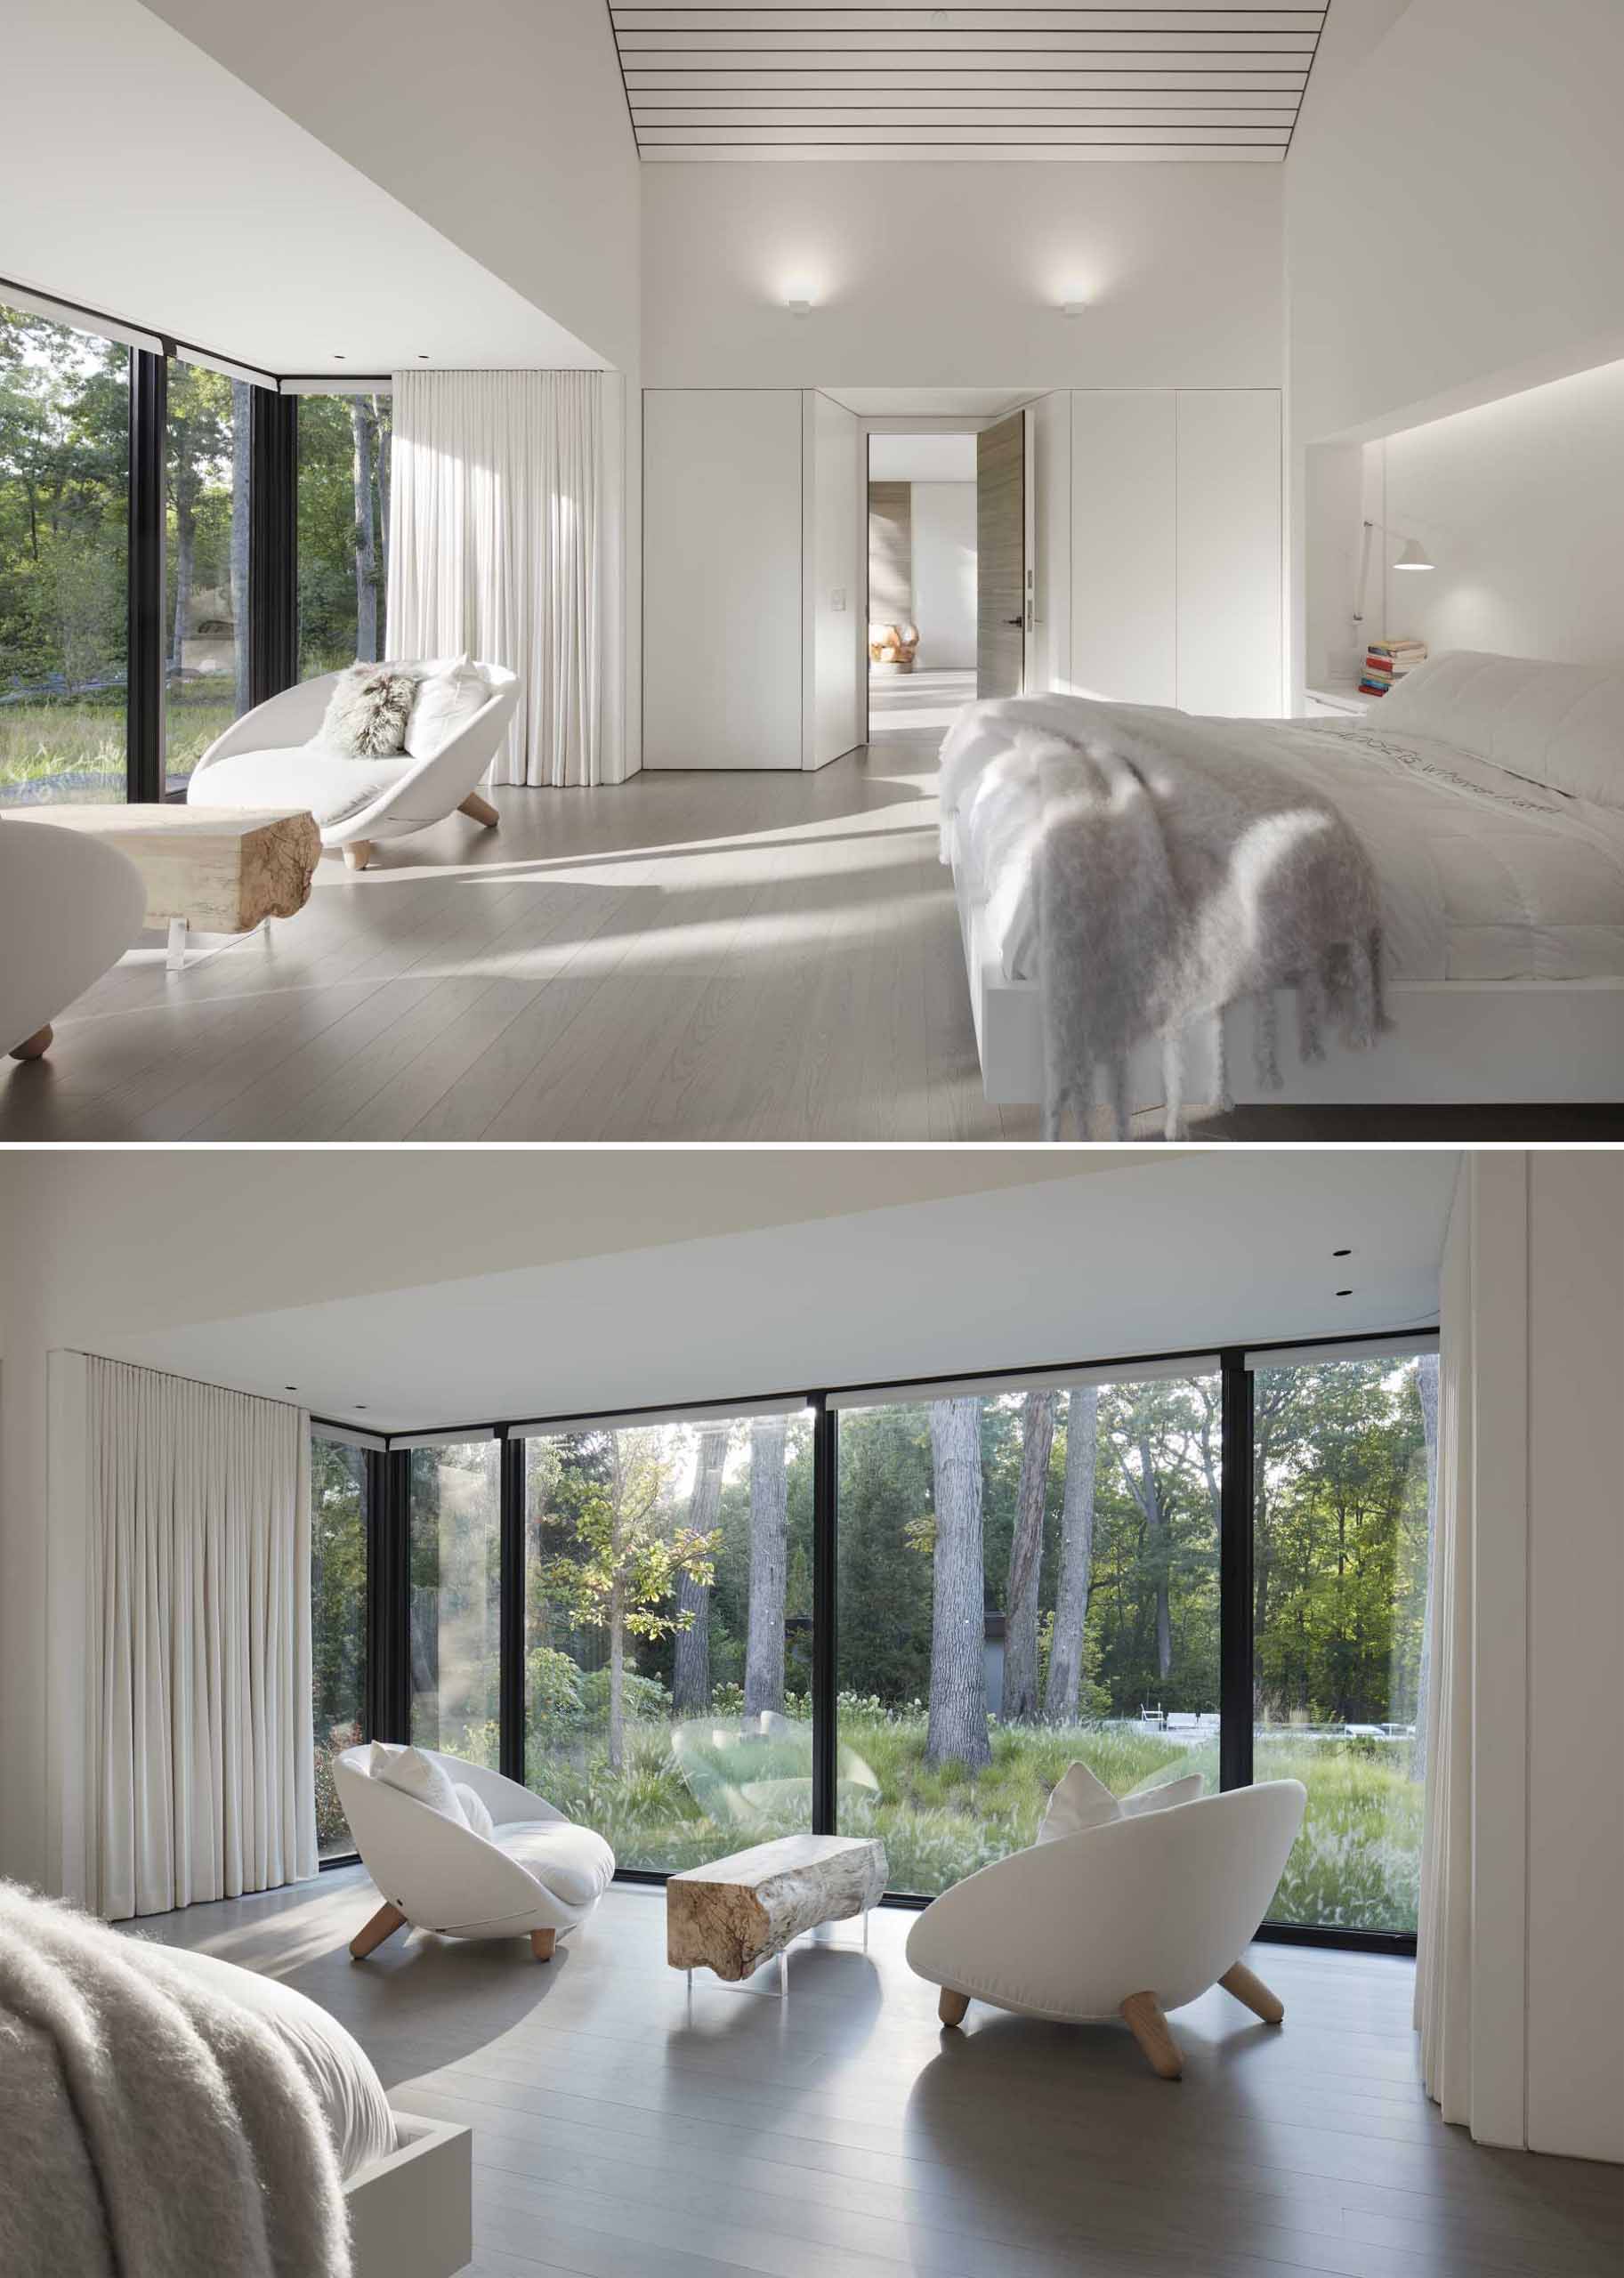 Эта современная спальня светлая и открытая, с собственной гостиной зоной с видом на сад.